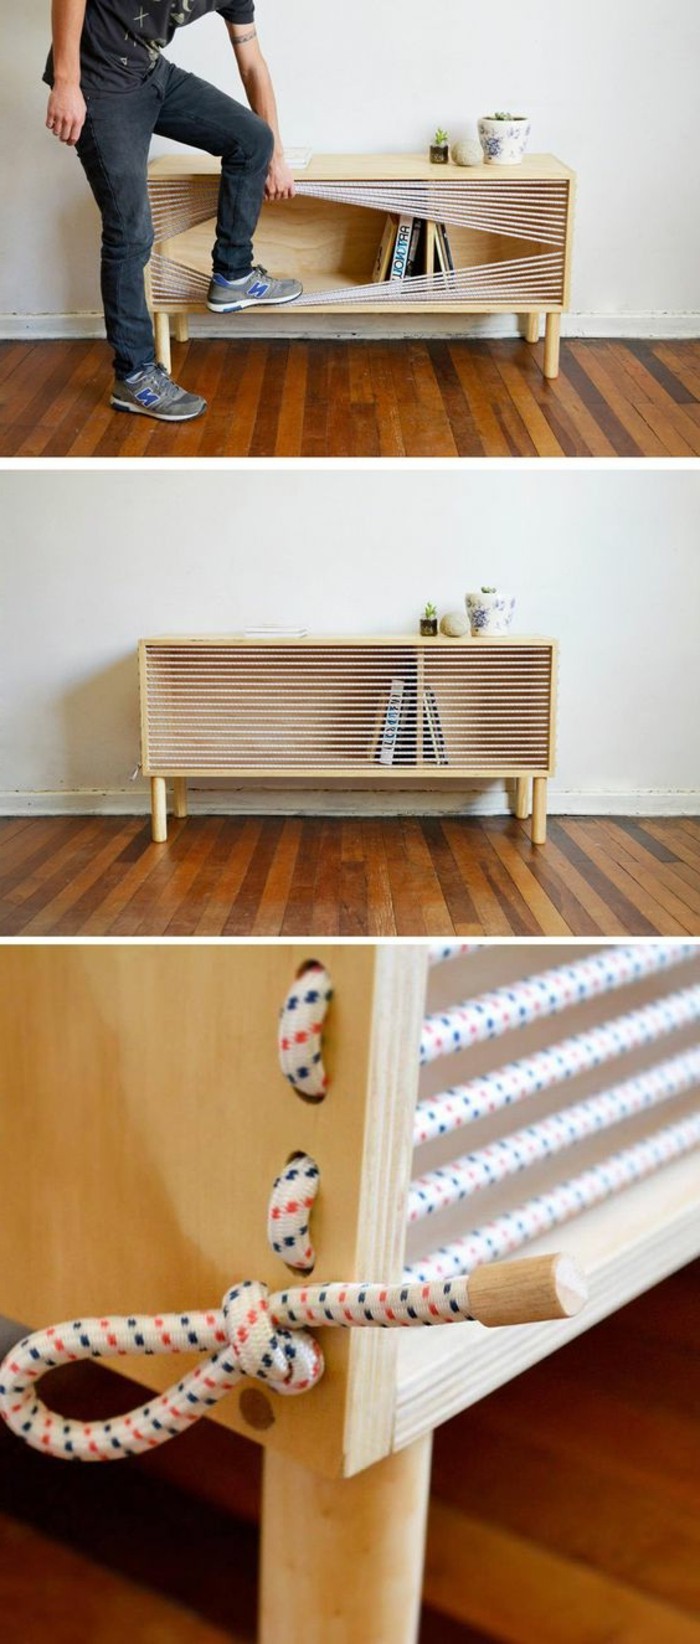 Направи си сам мебели направи си сам мебели малък кабинет изключване дърво въжета with-